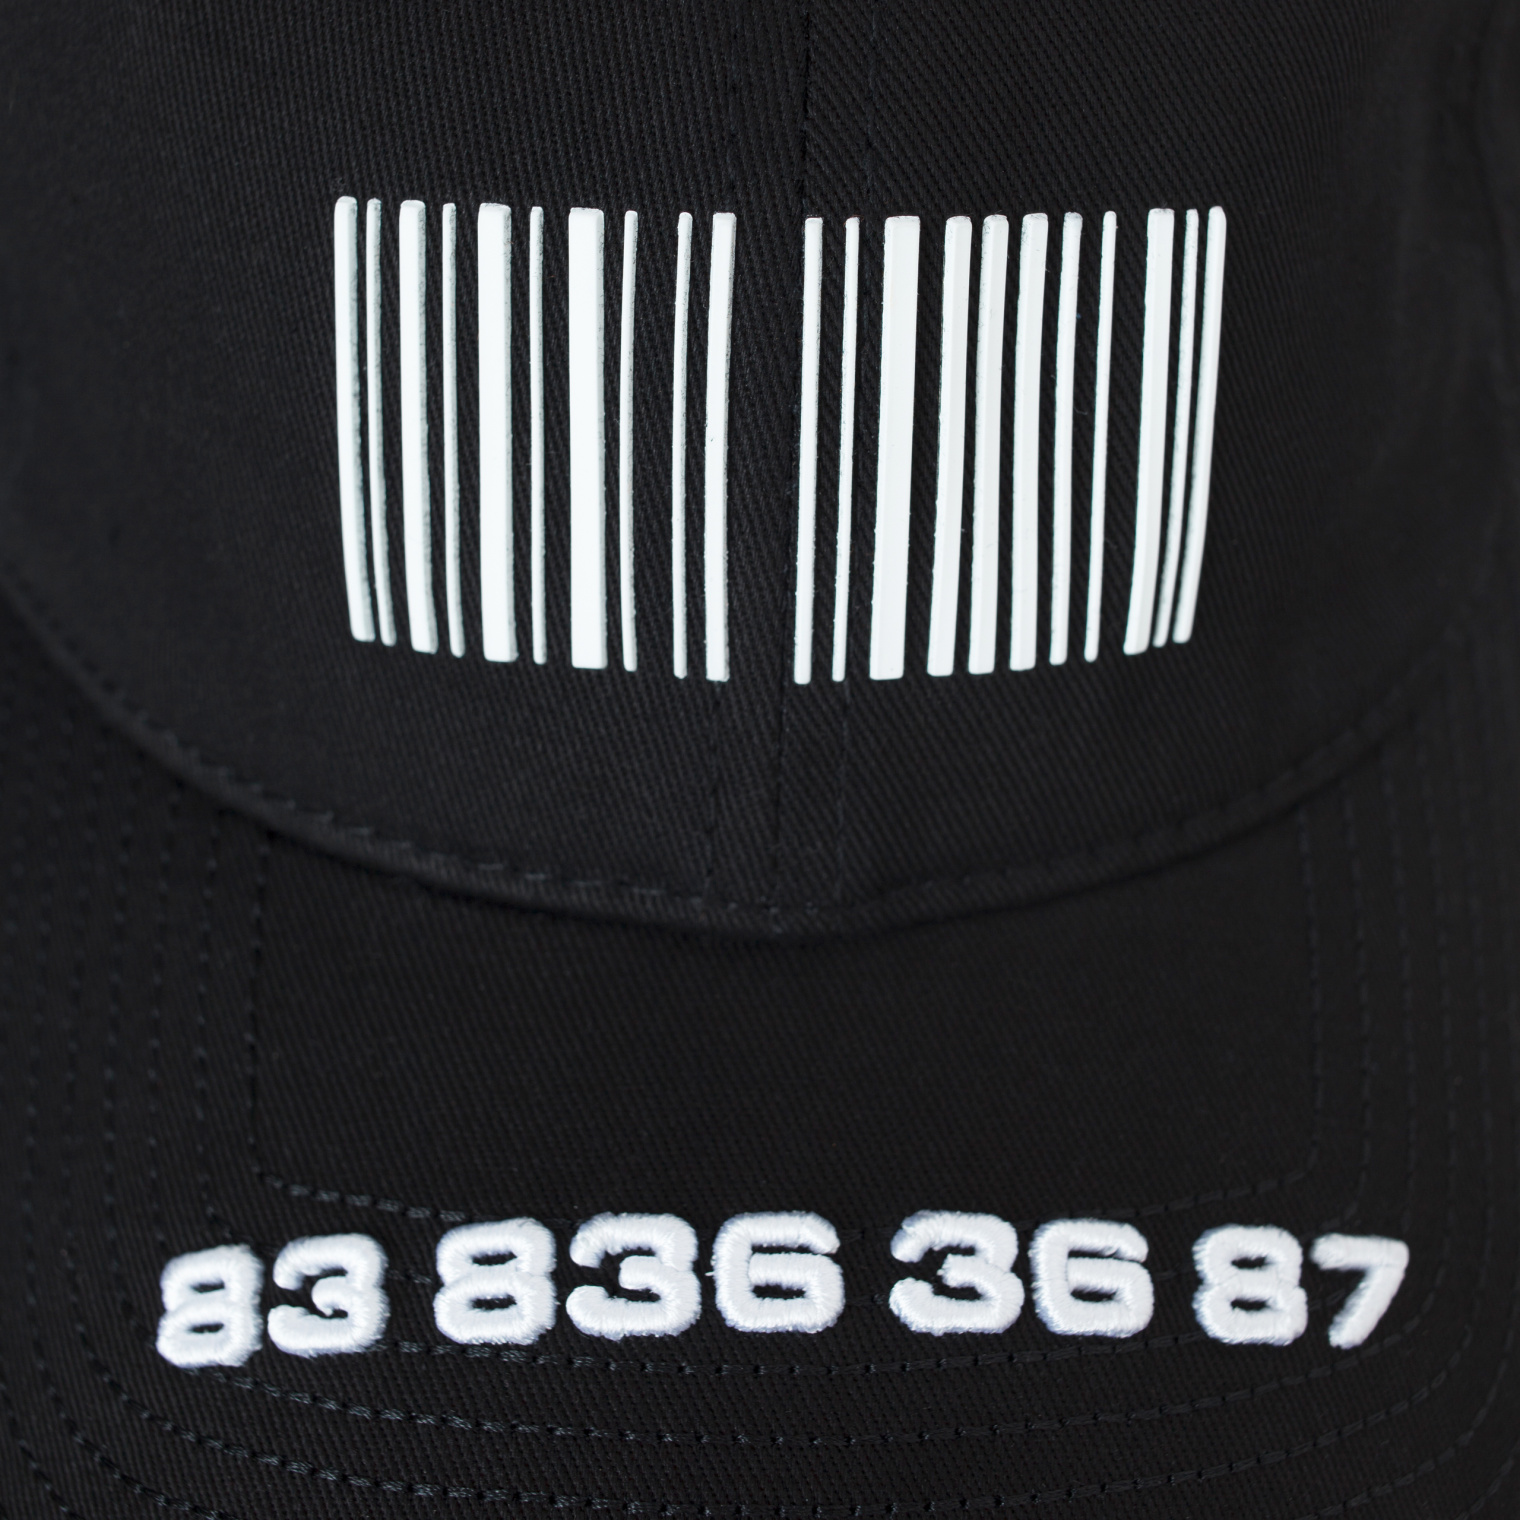 VTMNTS Black Barcode Cap